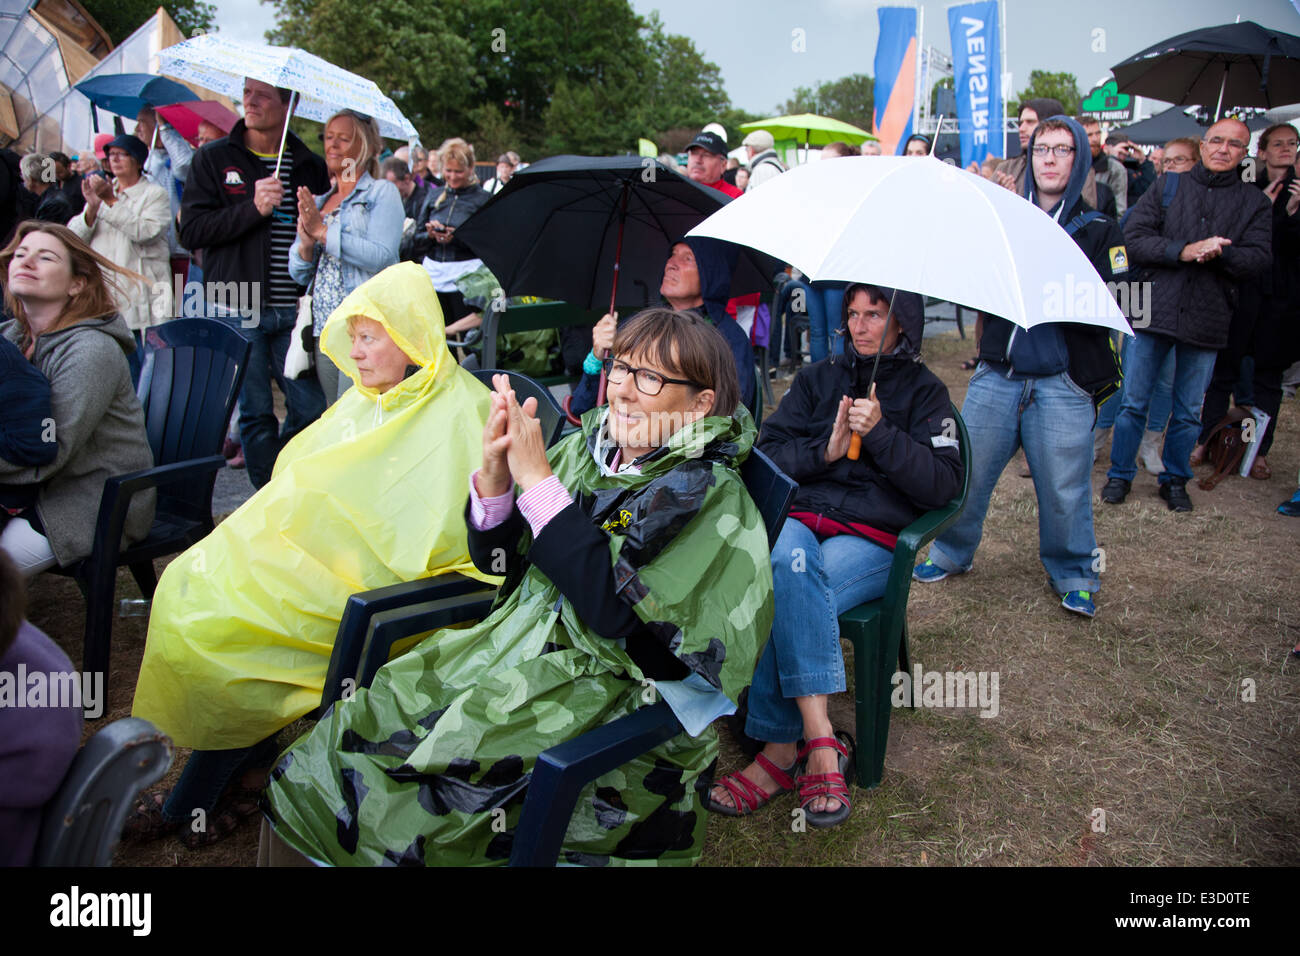 Folkemøde på Bornholm. Publikum i regnen lytter til Johanne Schmidt-Nielsen, leder af Enhedslisten. Stock Photo